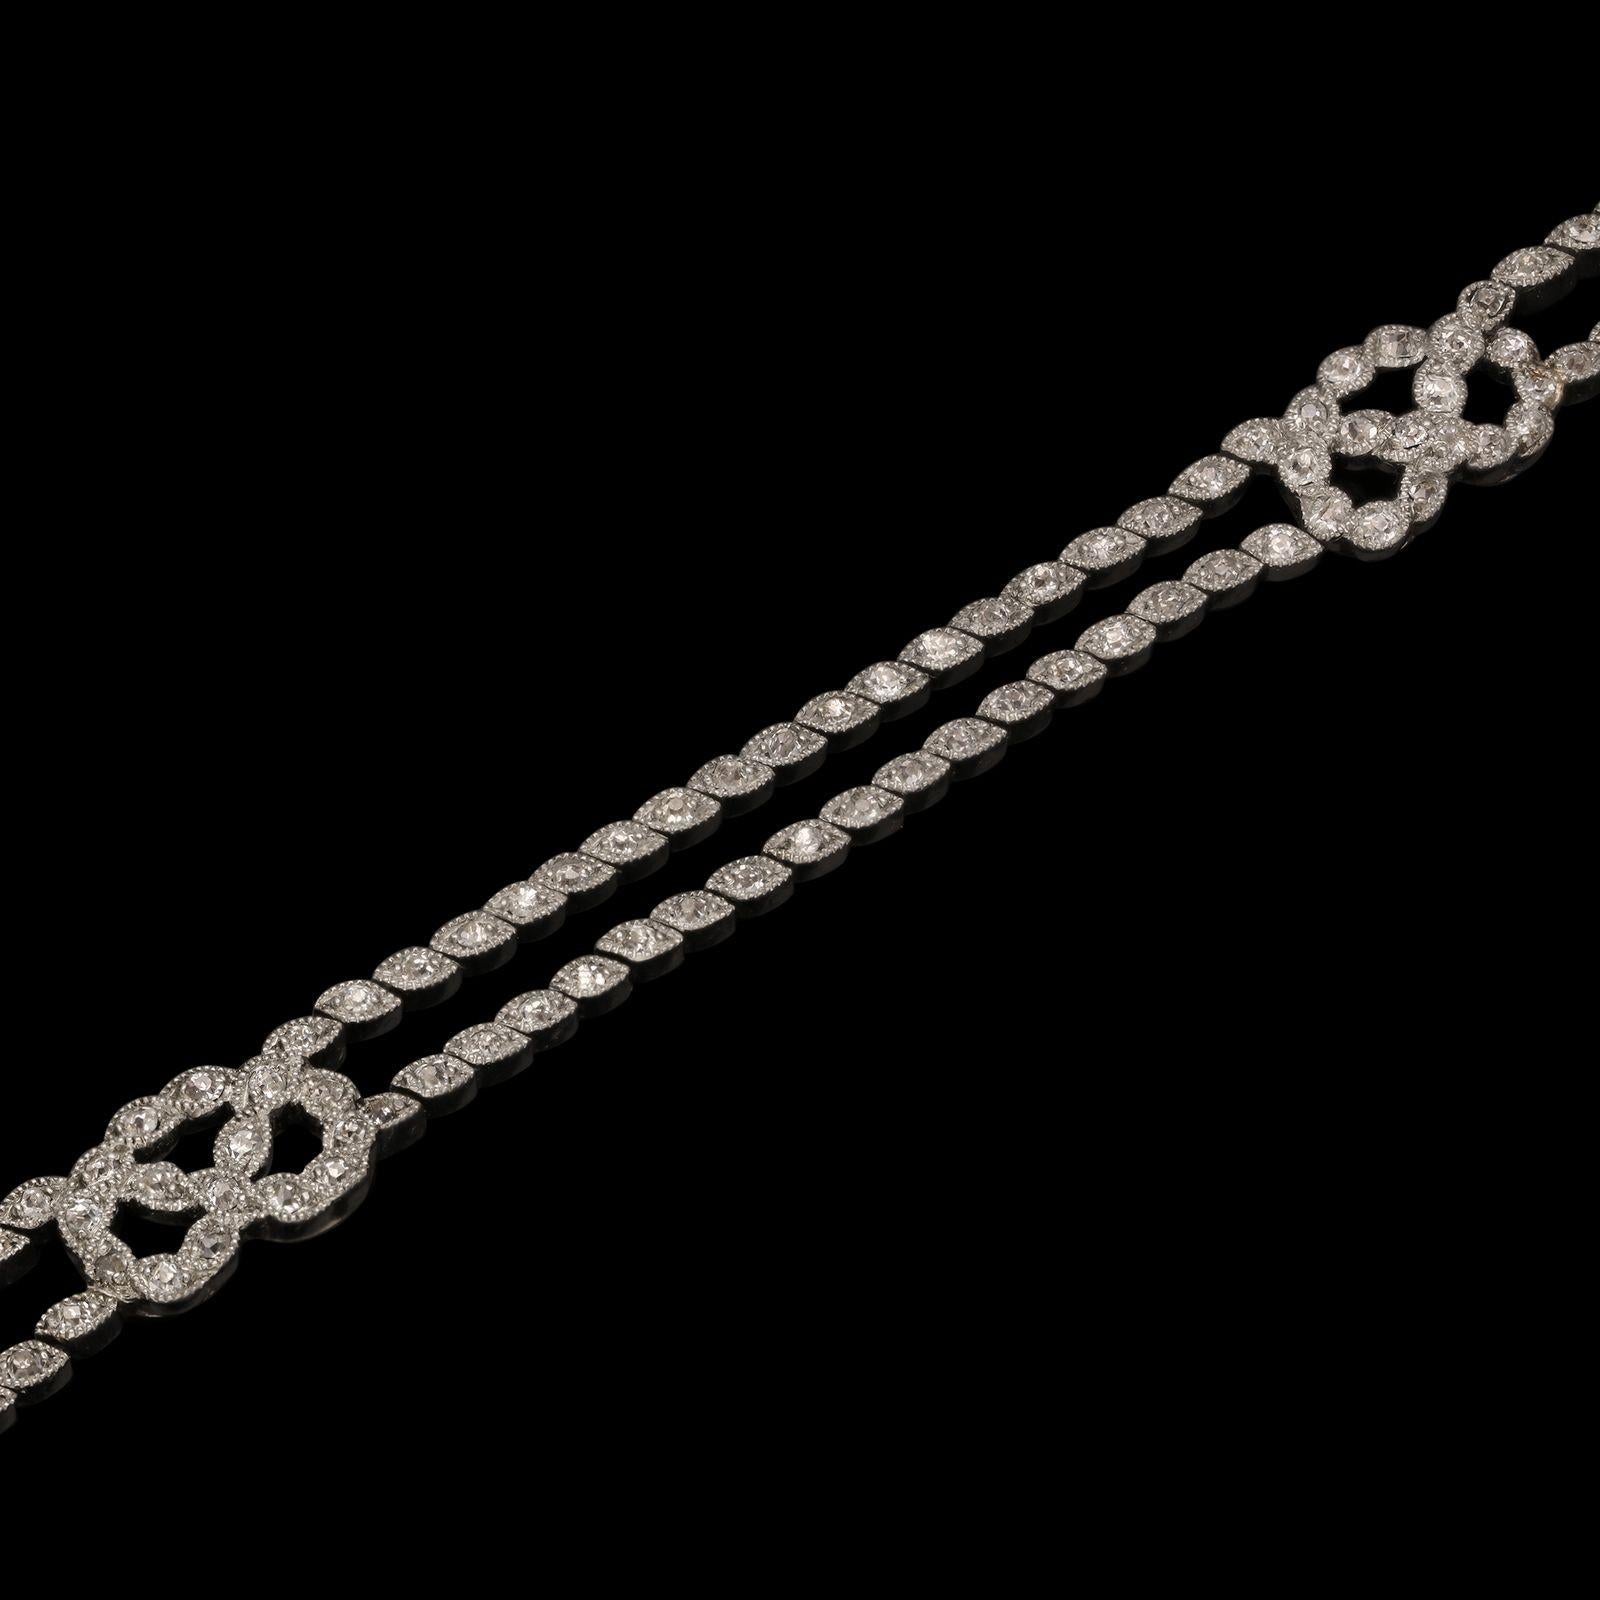 Ein wunderschönes Belle-Epoque-Diamant- und Platinarmband um 1910. Das Armband besteht aus zwei Reihen altgeschliffener Diamanten, die in marquiseförmige Platinspangen gefasst sind, mit diagonal angeordneten Millegrain-Einfassungen, die den Eindruck